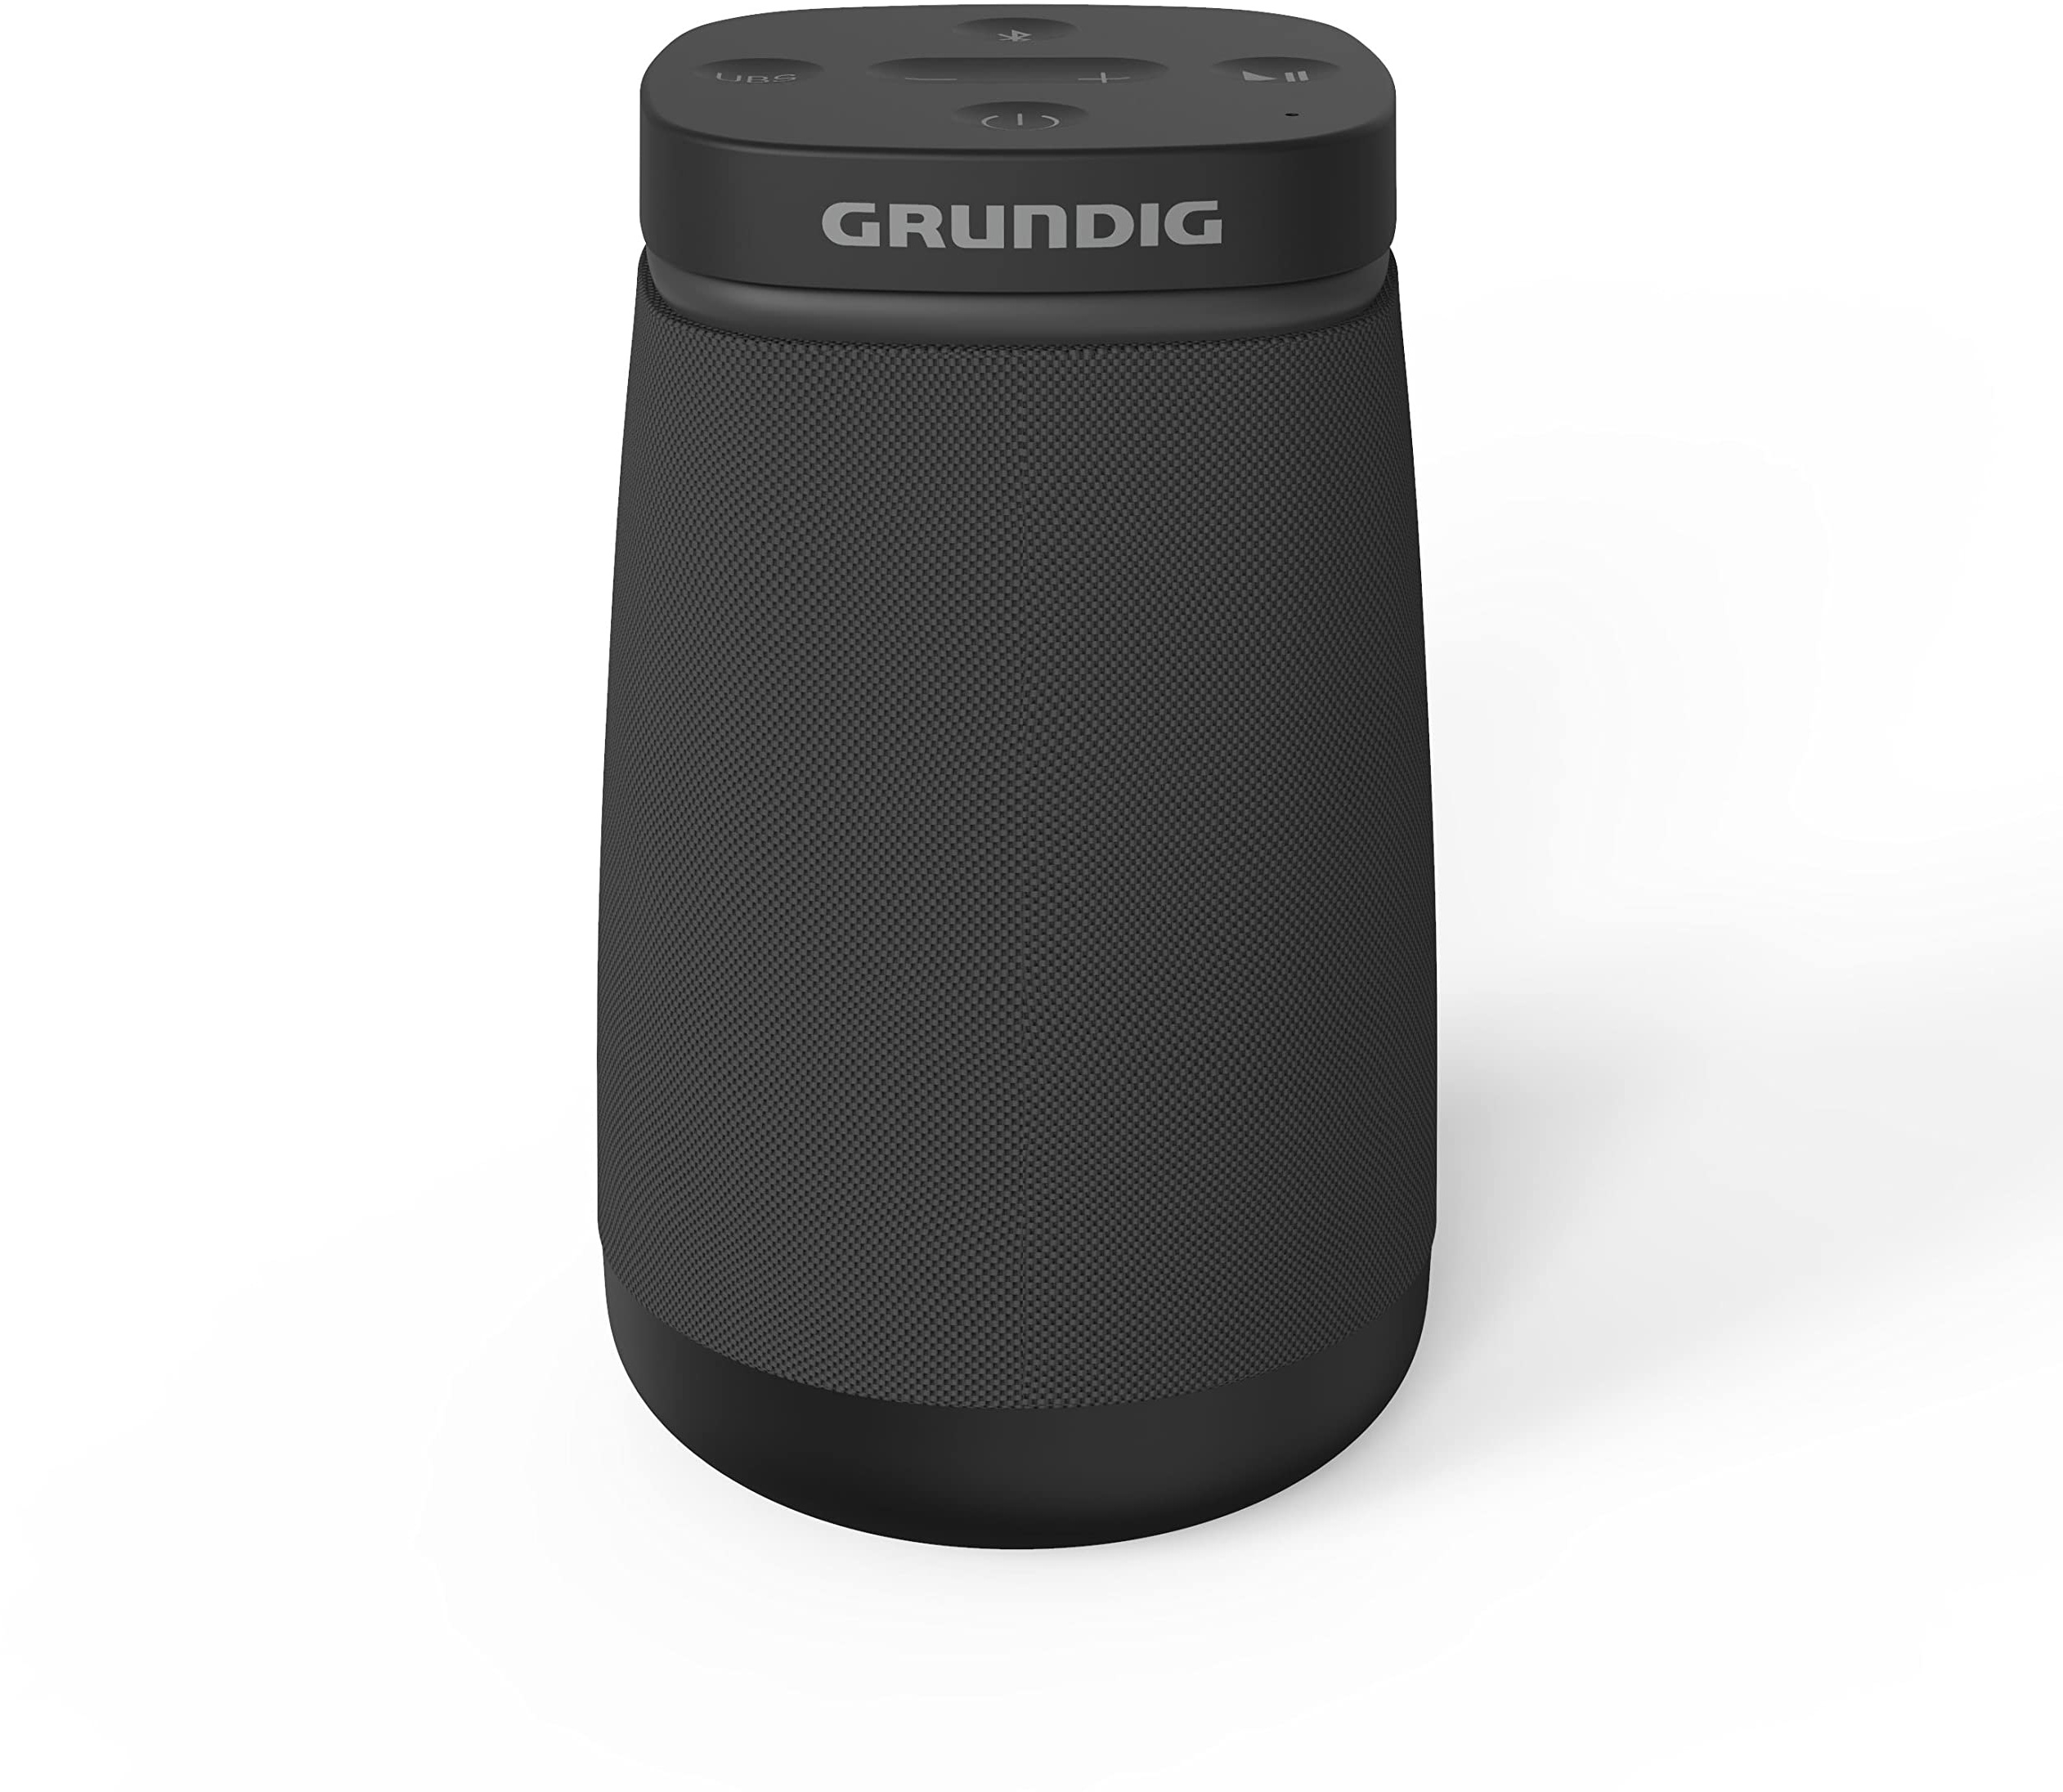 Grundig Bluetooth Lautsprecher Portable 360, Musikbox, 360°-Sound, 12 Watt RMS, bis zu 30 m Reichweite, bis zu 11 Stunden Akkulaufzeit, Freisprechfunktion, AUX Input, LED Akkustandanzeige, Schwarz